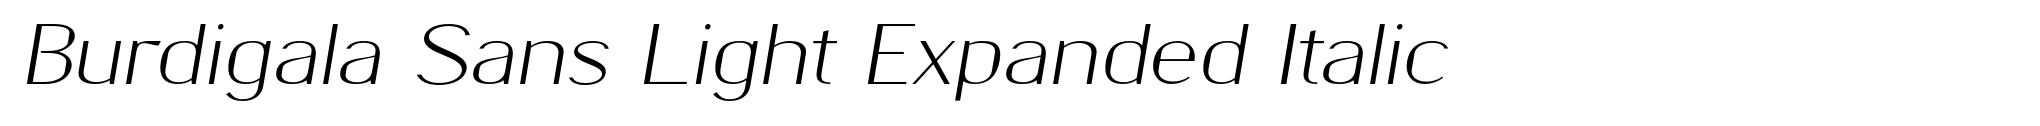 Burdigala Sans Light Expanded Italic image